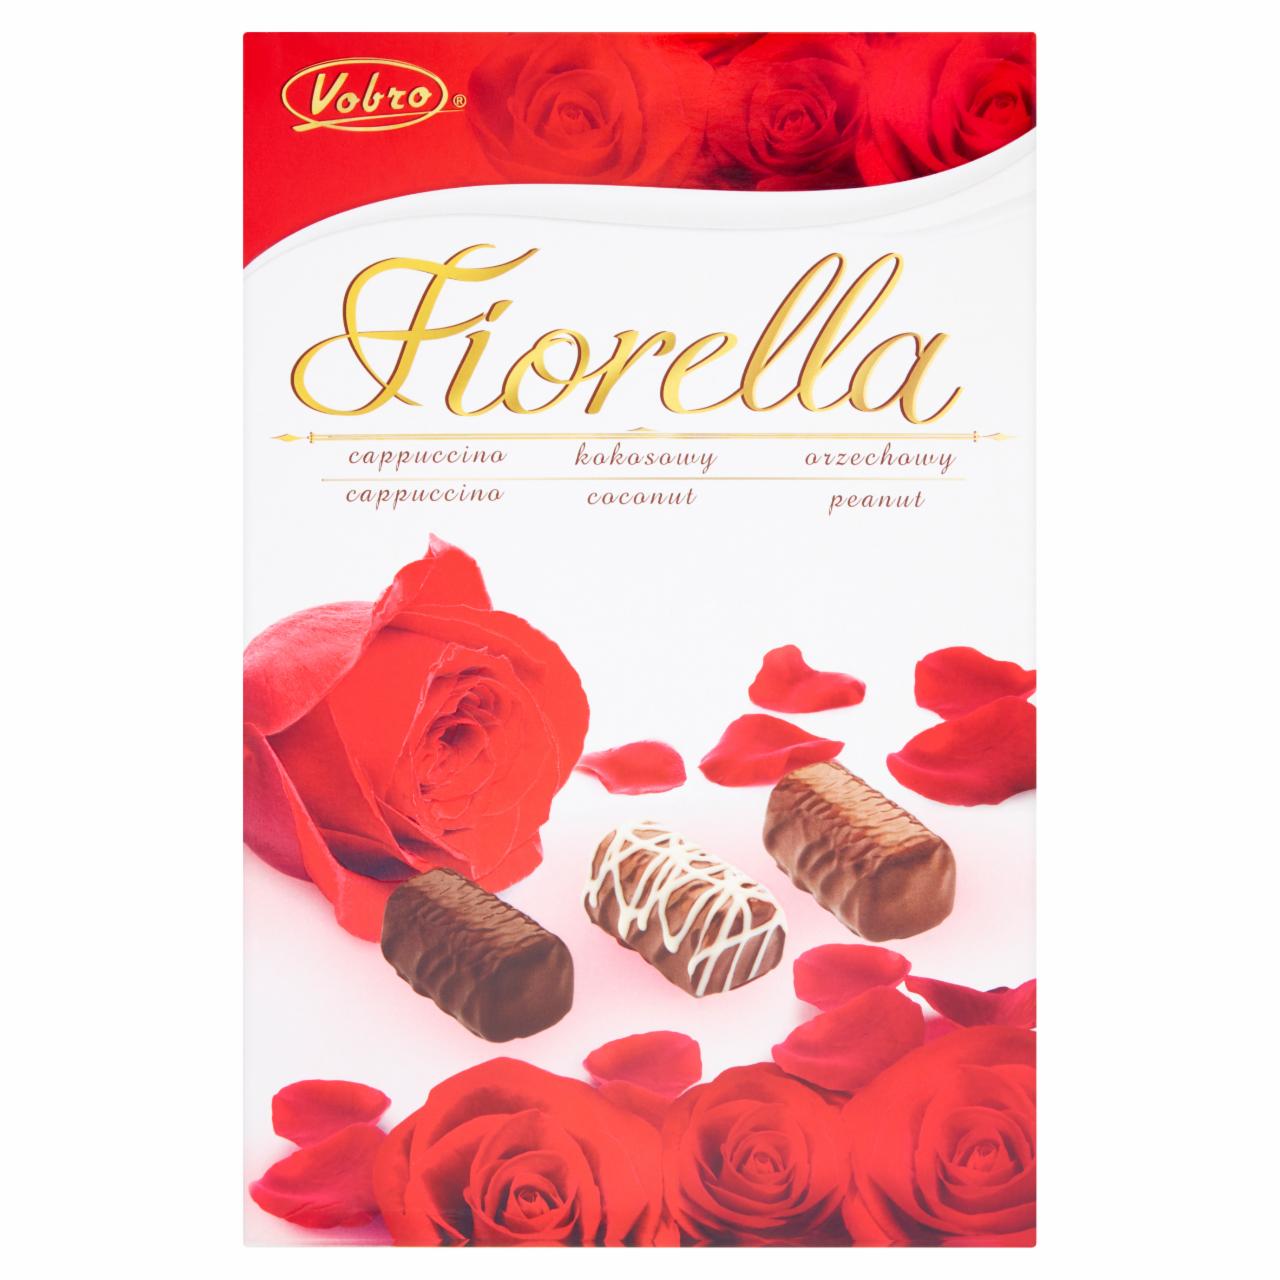 Zdjęcia - Vobro Fiorella Cukierki w czekoladzie o smaku cappuccino kokosowym i orzechowym 140 g